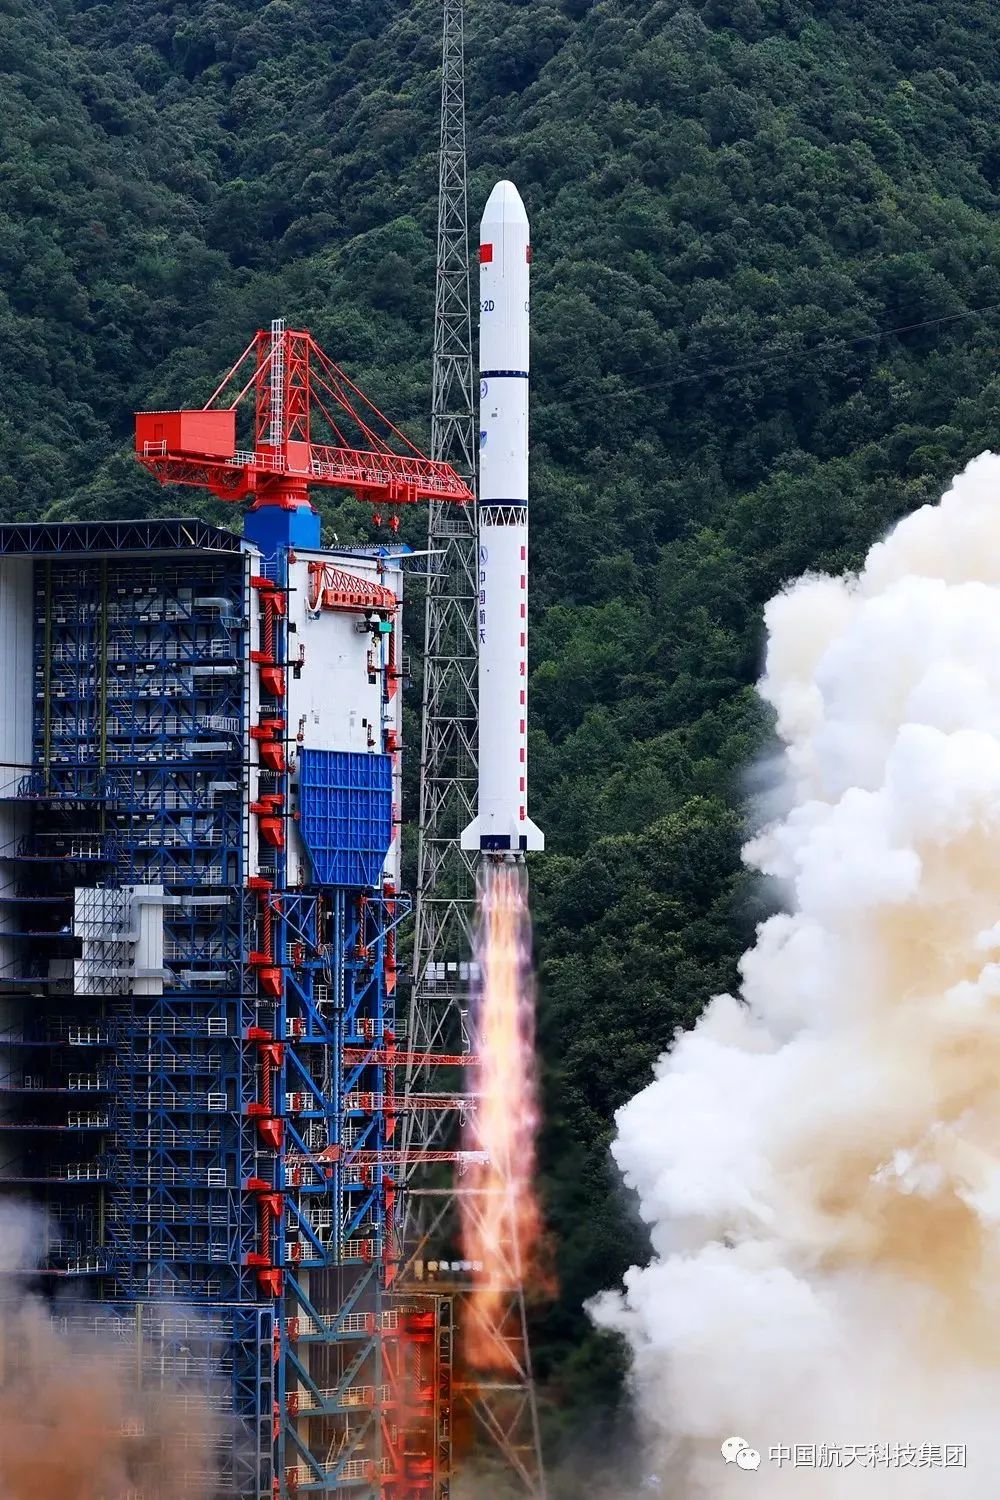 图源:中国航天科技集团发,邱立军 摄本次发射是长征二号丁运载火箭第